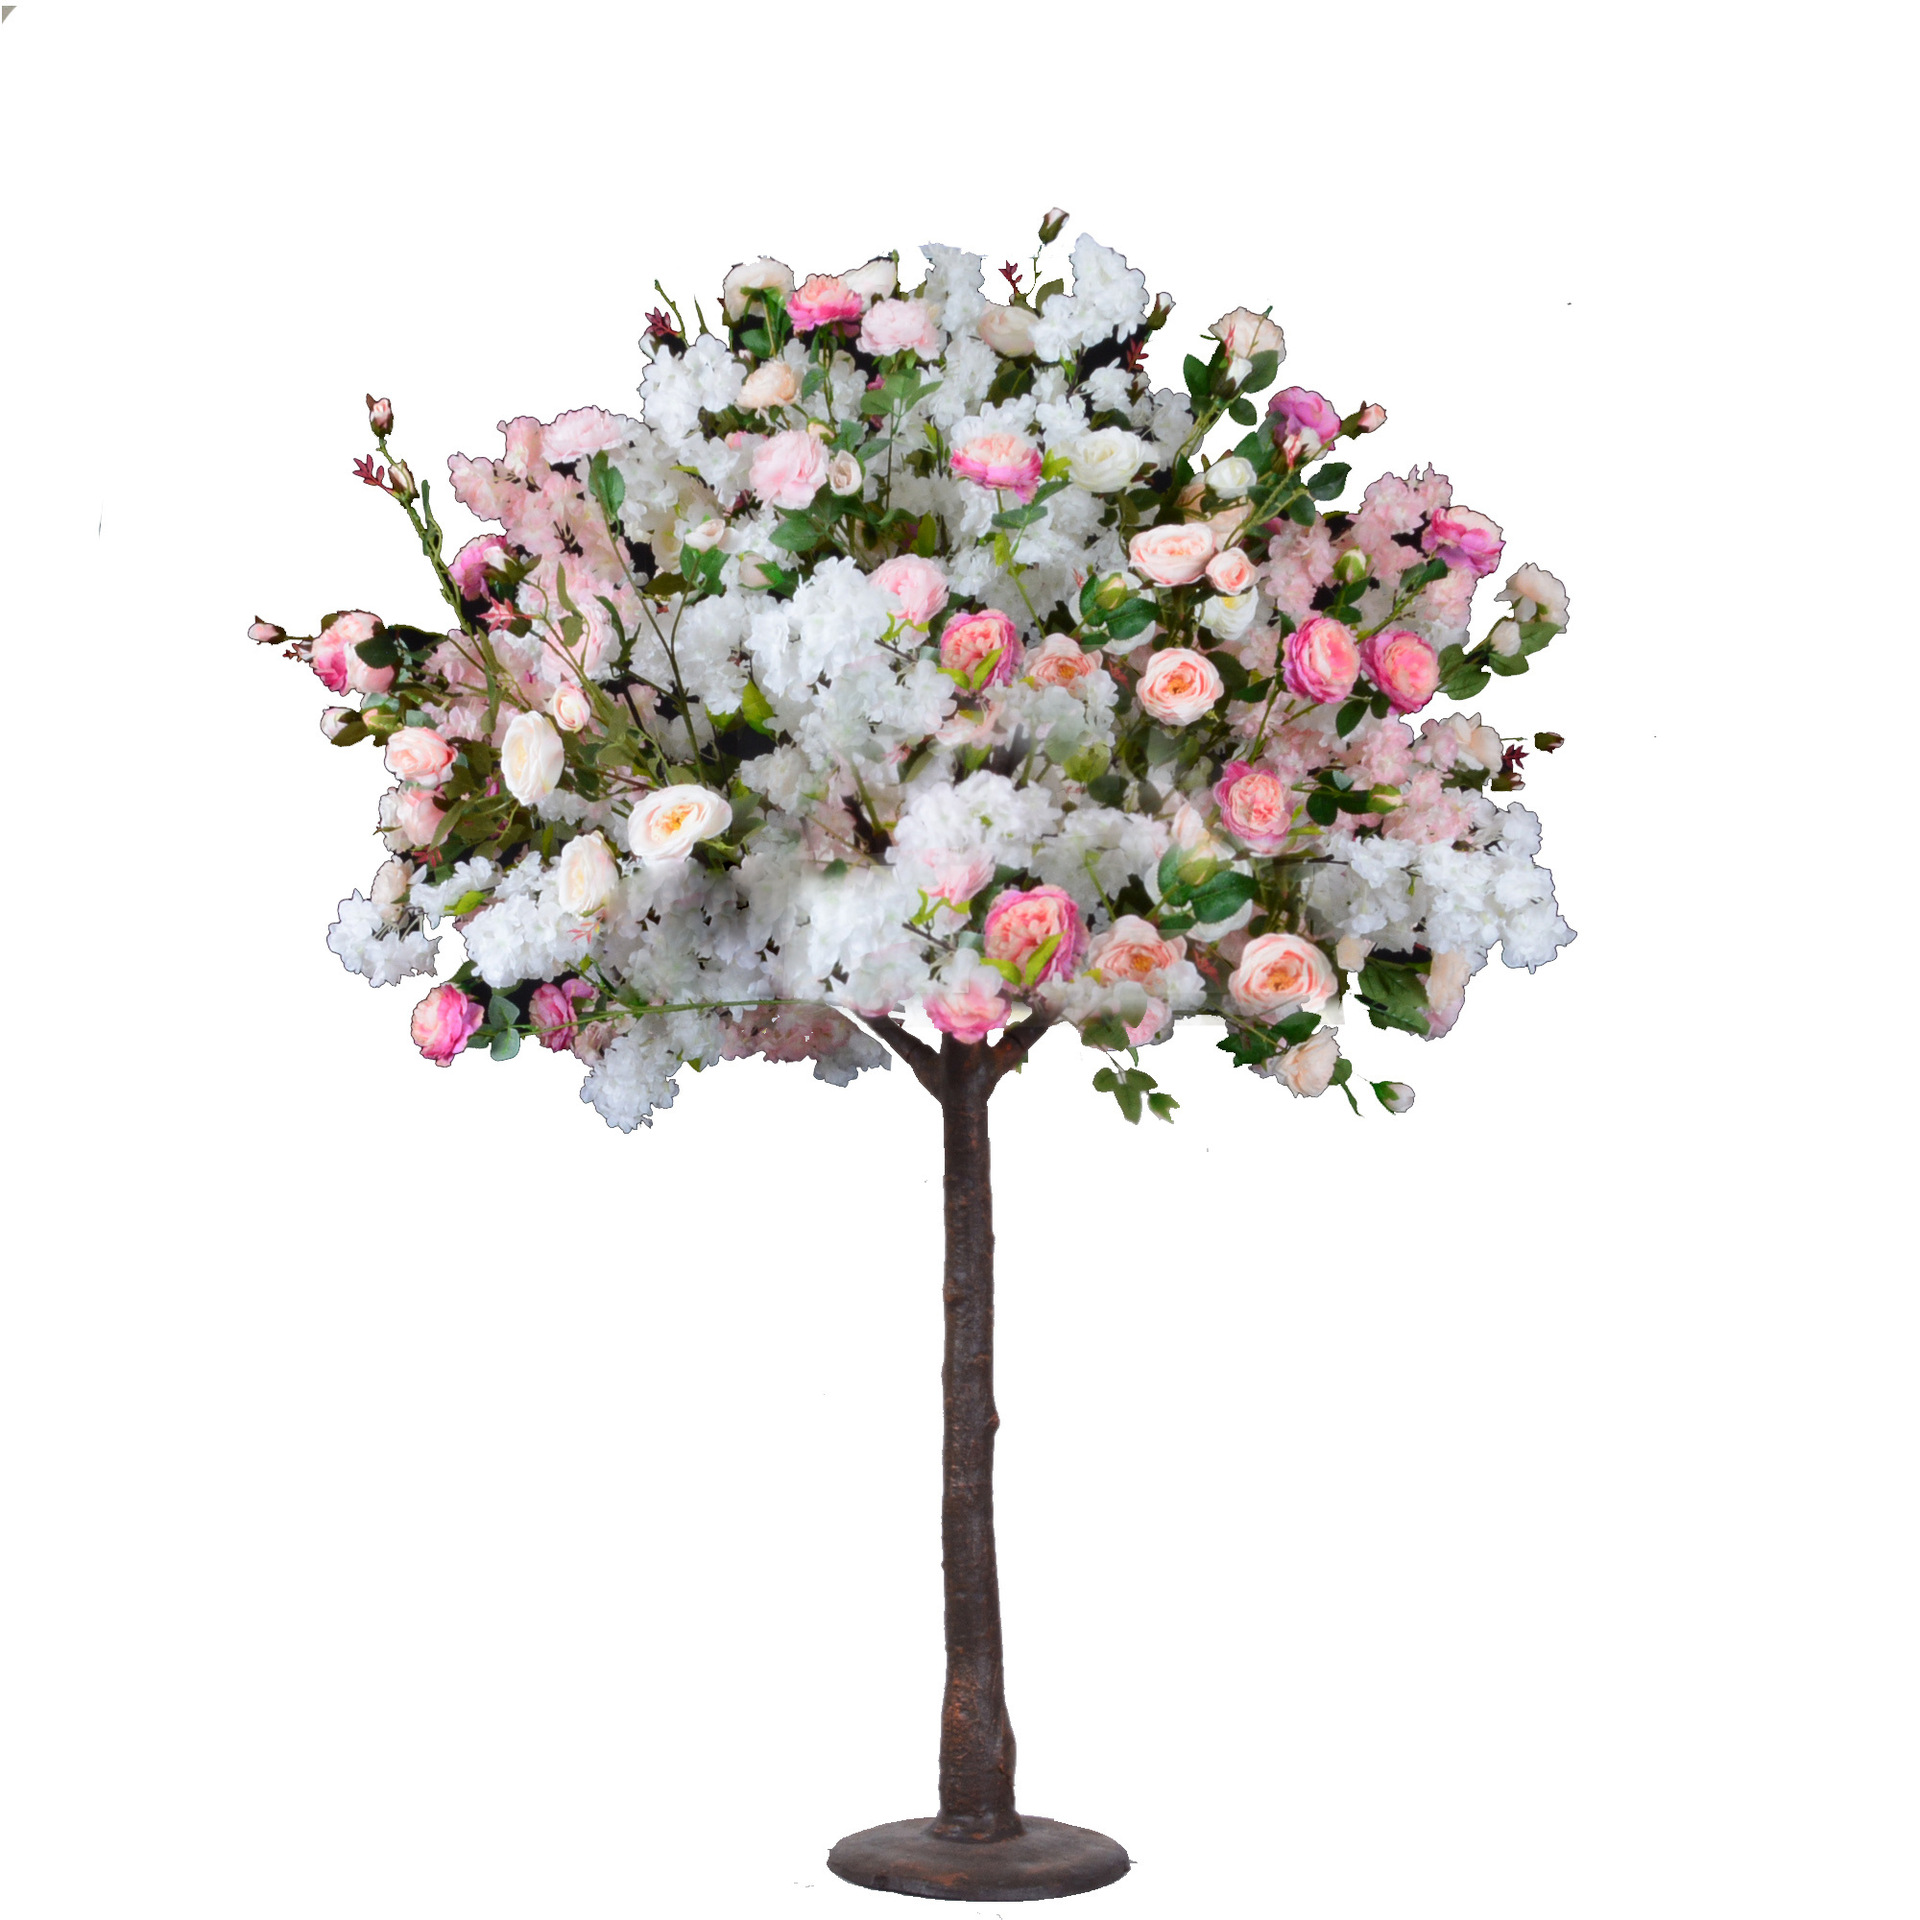 Pohon kembang sakura buatan simulasi wit kembang mekar kanggo dekorasi wedding njero ruangan